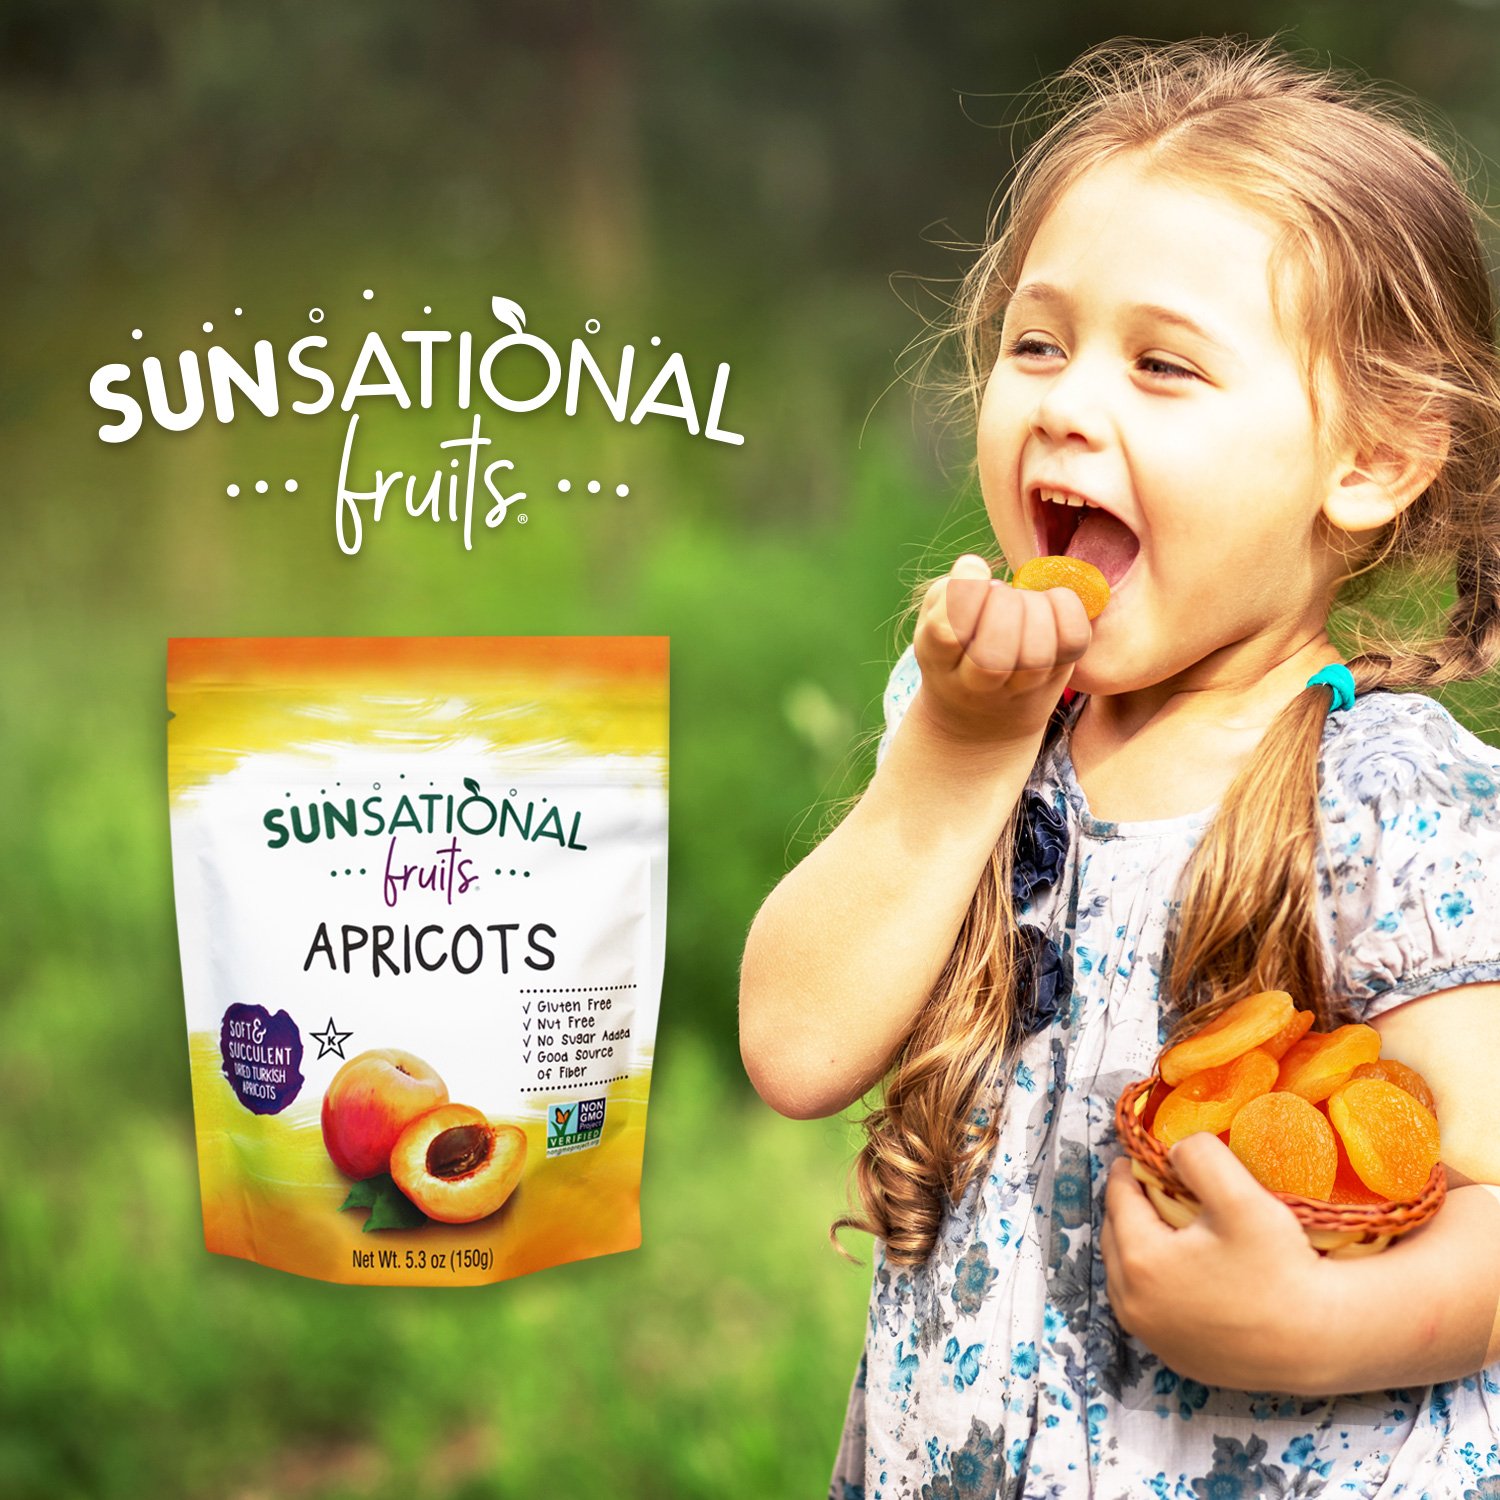 Quả Mơ Giòn Sấy Khô (150g) - Sunsational Fruits Apricots (150g) - không thêm đường, nhiều chất xơ, không chất bảo quản